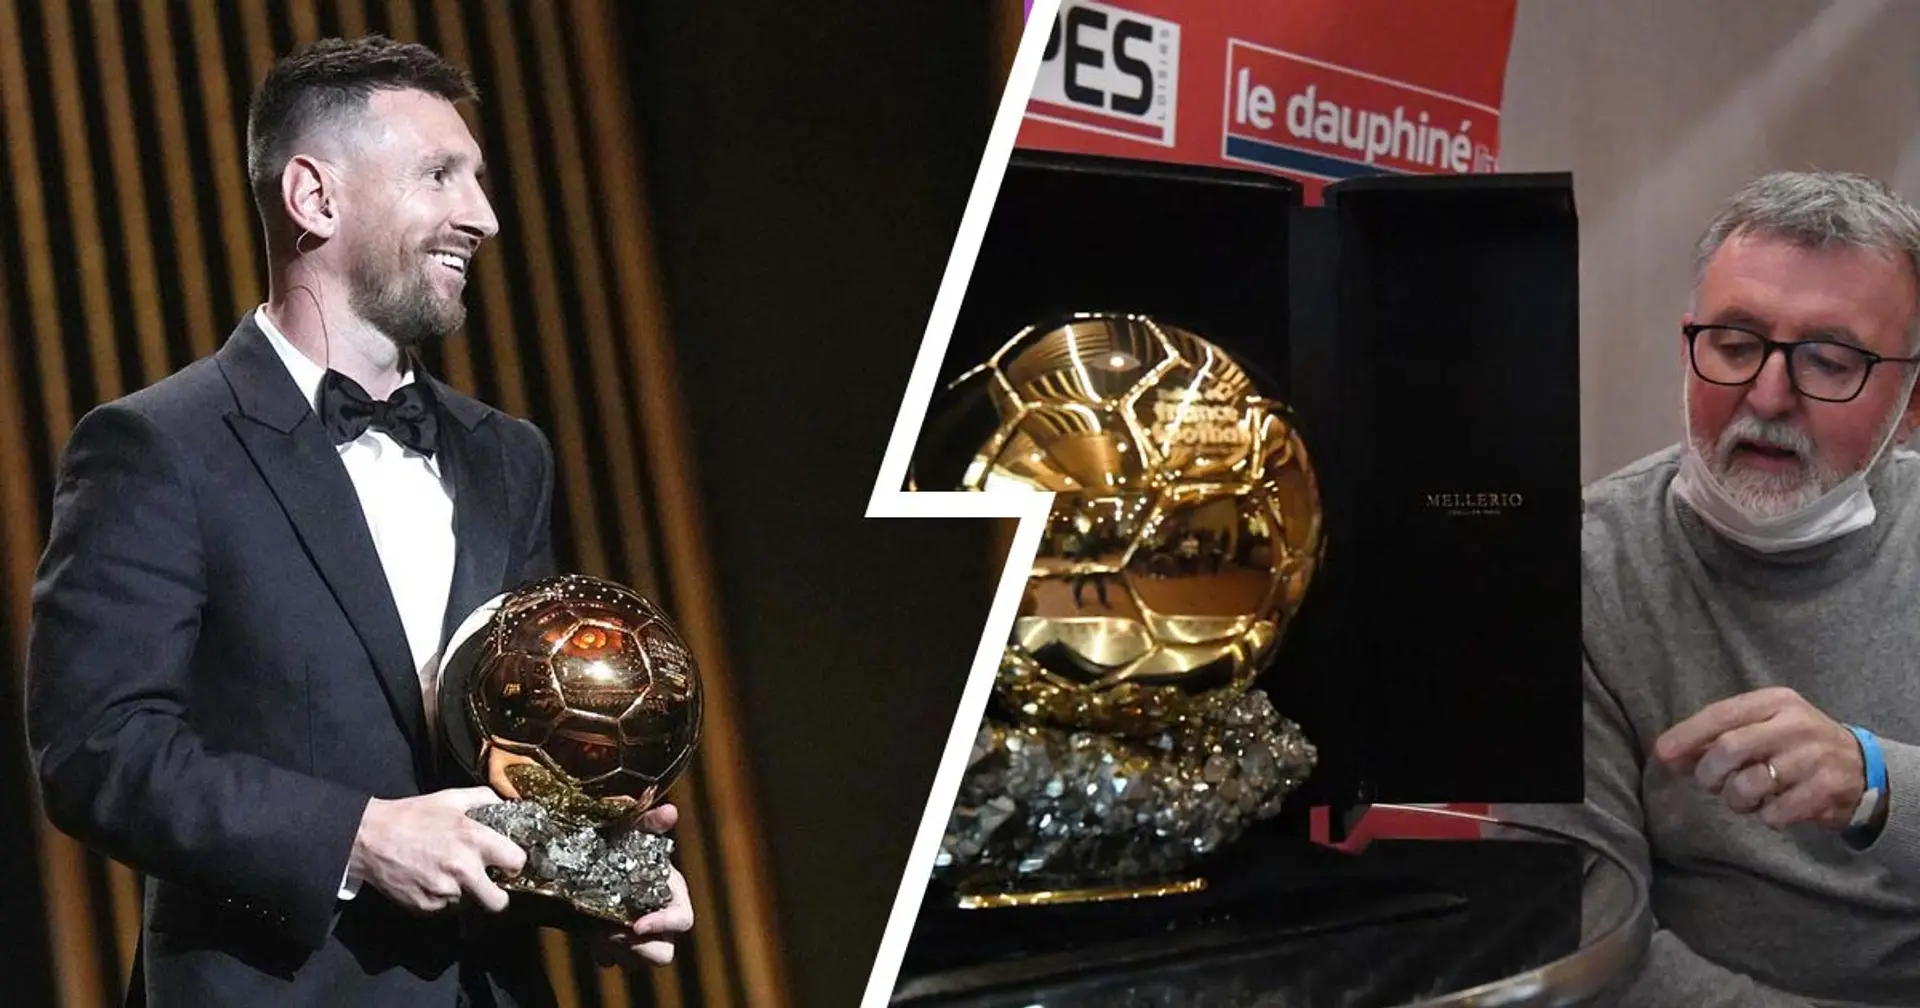 Soupçon de corruption impliquant le PSG dans l'attribution du Ballon d'Or de Messi - un journaliste de France Football gravement mise en cause